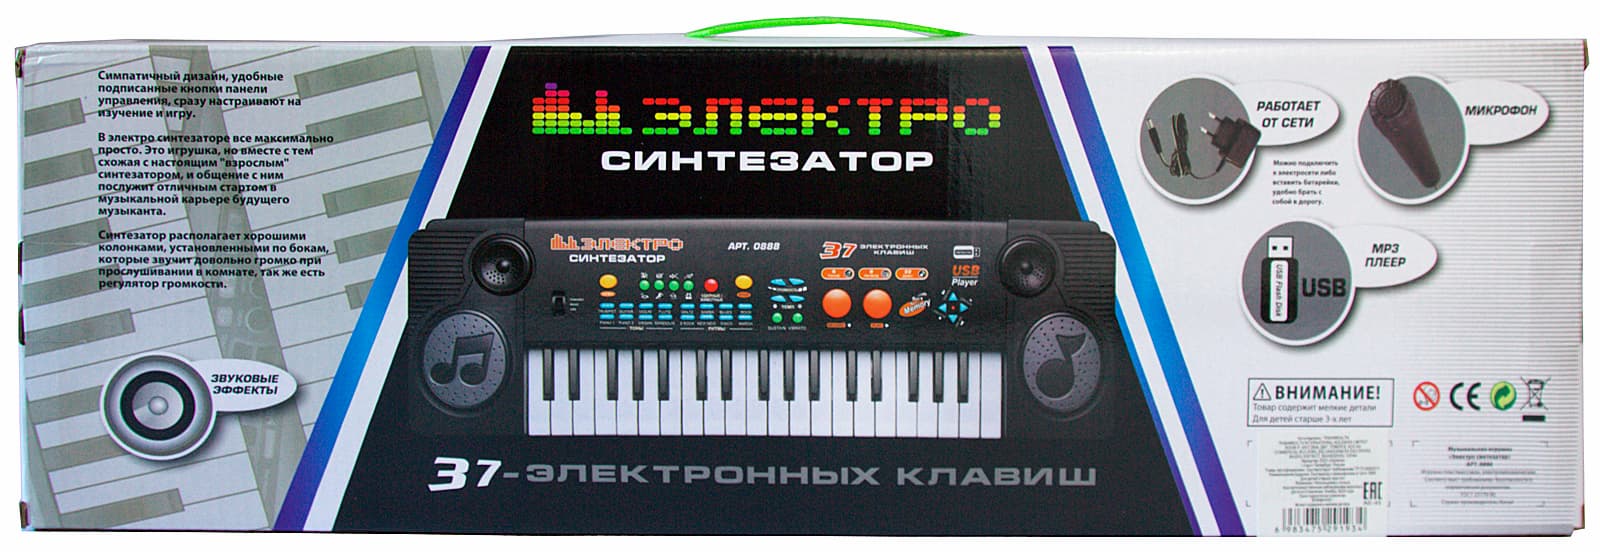 Детский синтезатор Play Smart с микрофоном, 37 клавиш, 0888